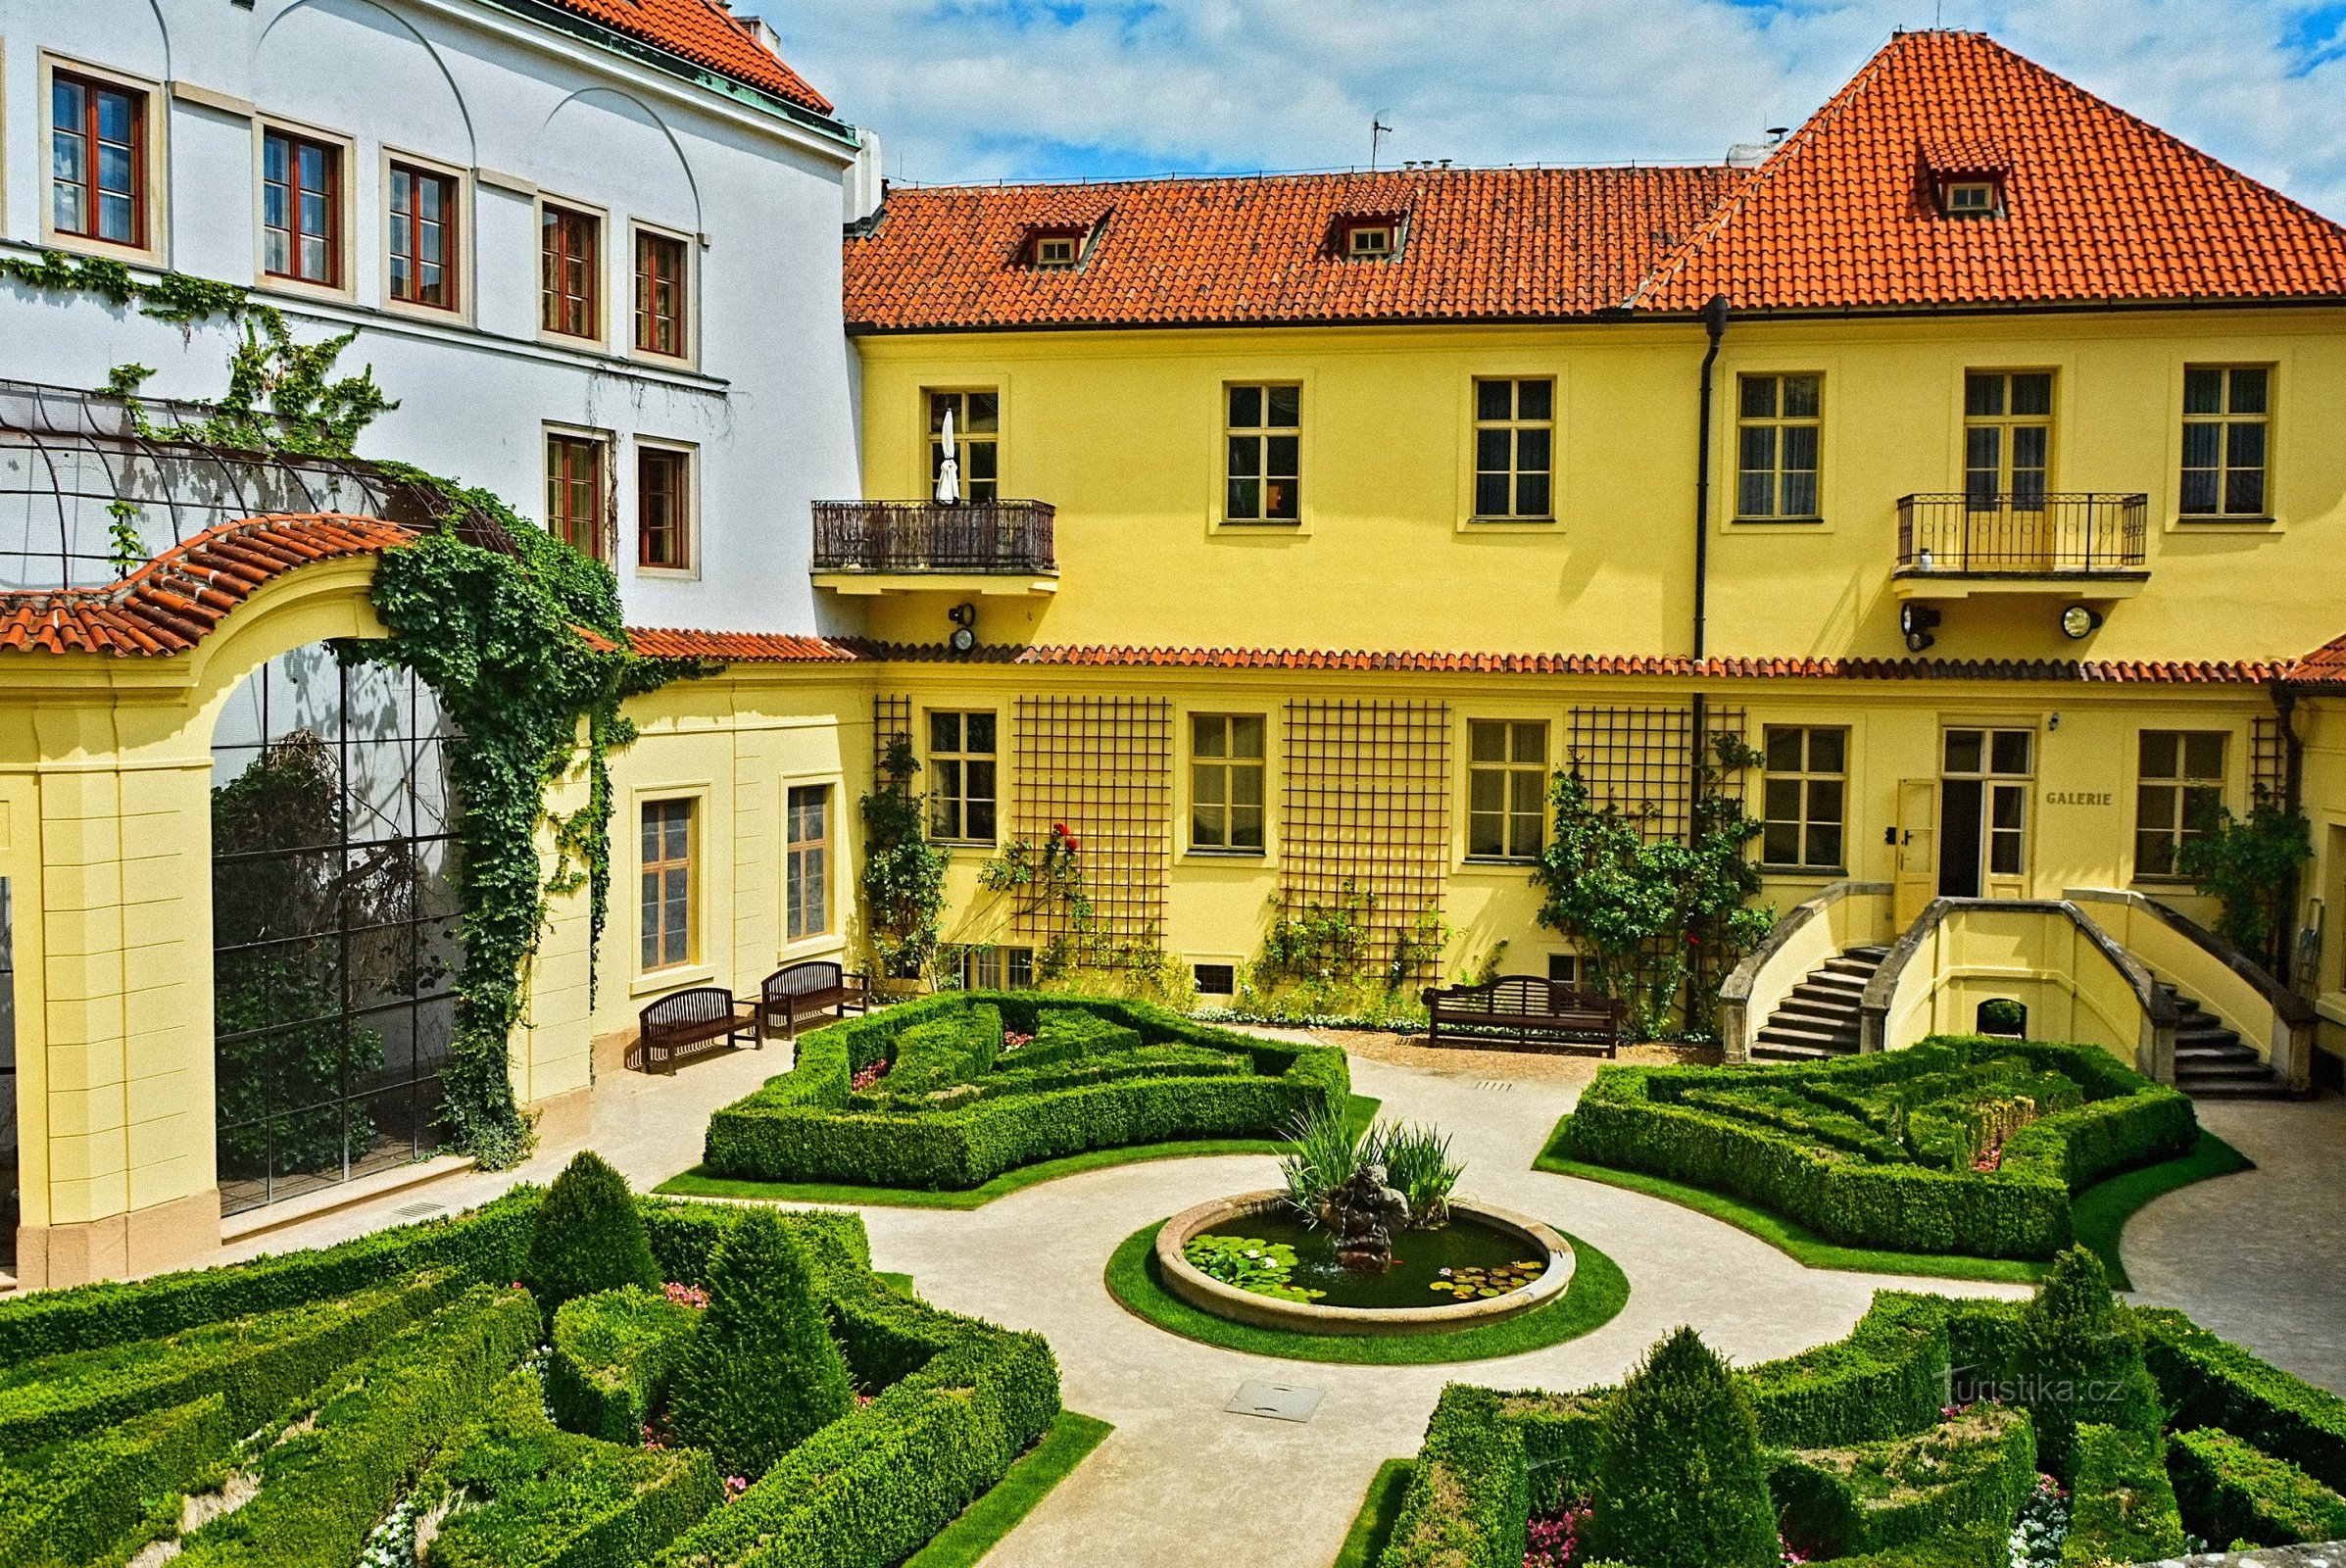 Grădina Vrtbovská cu vedere frumoasă la Praga